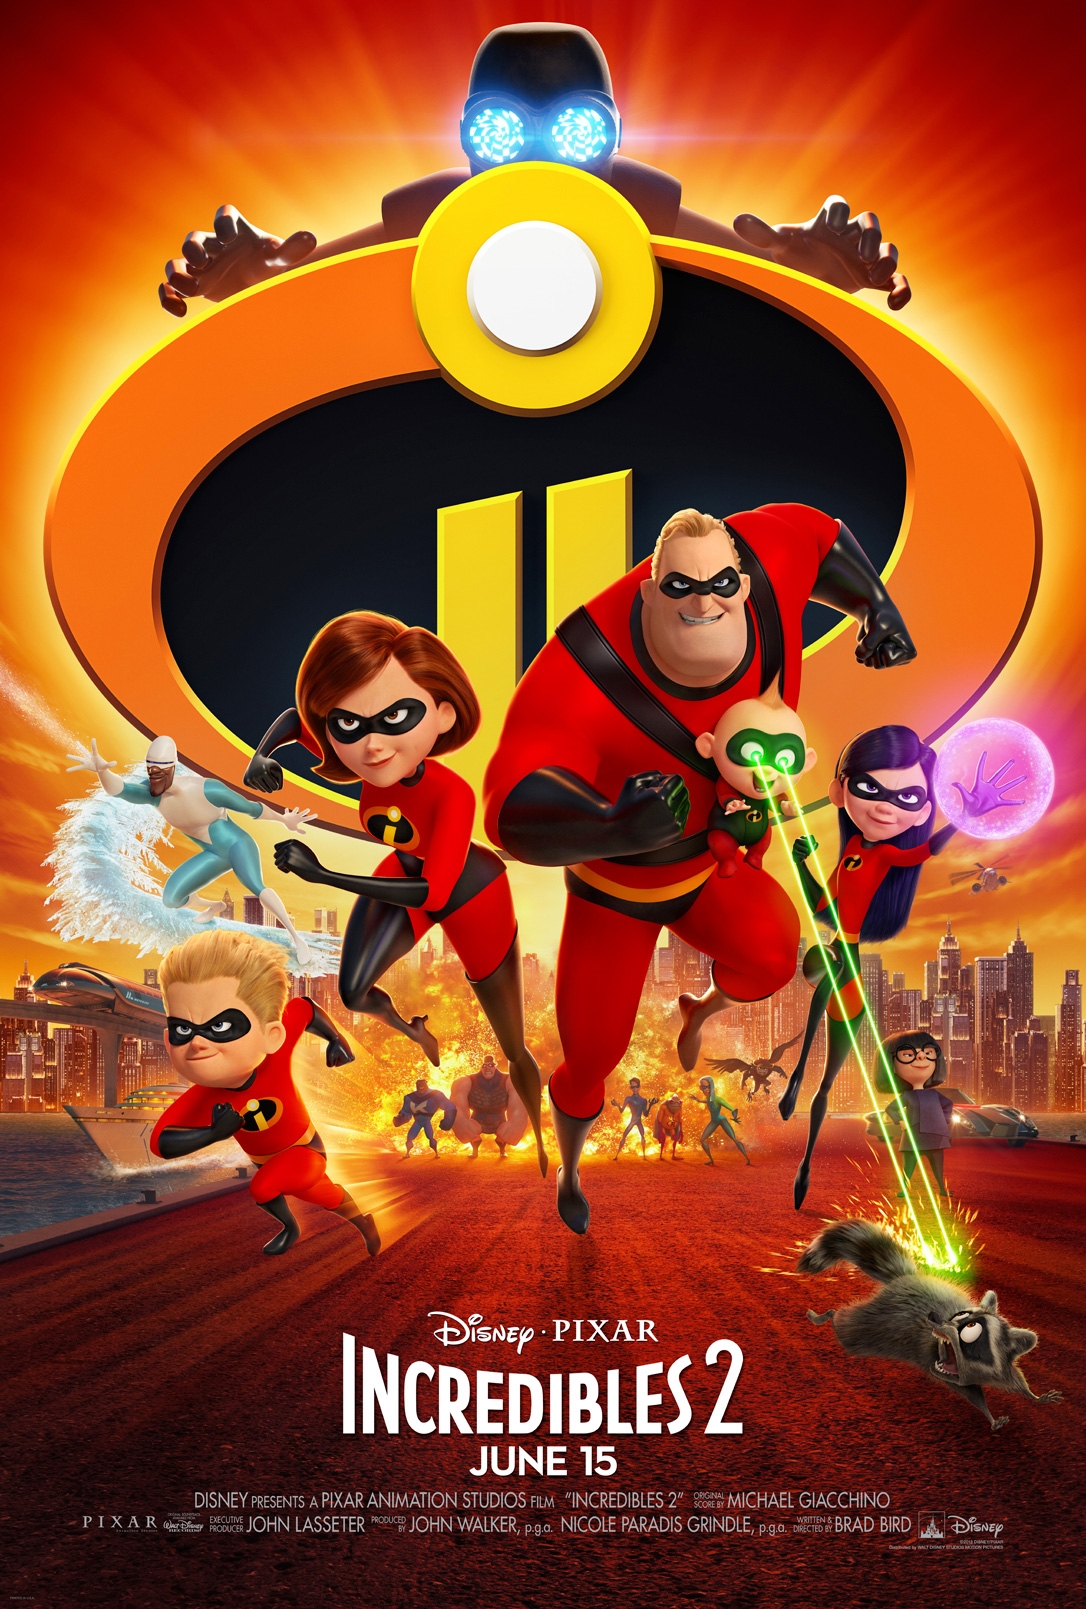 Incredibles 2 Review: Cloning the Superhero Genre